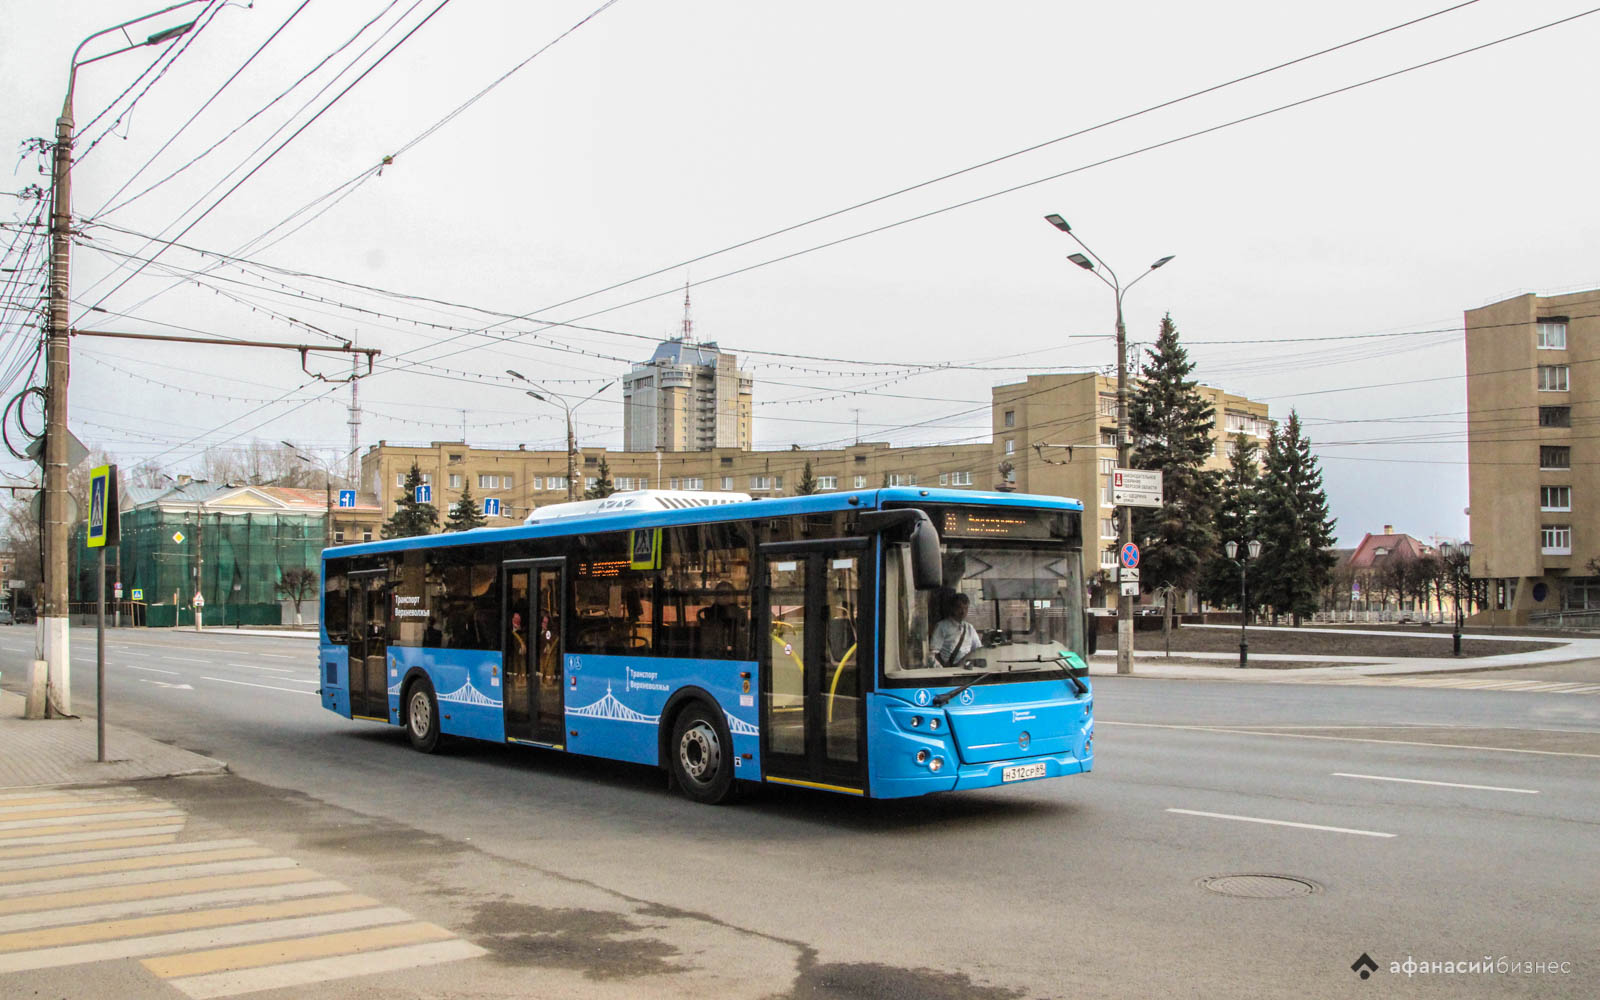 Со вторника на смену троллейбусу в Твери выйдут автобусы